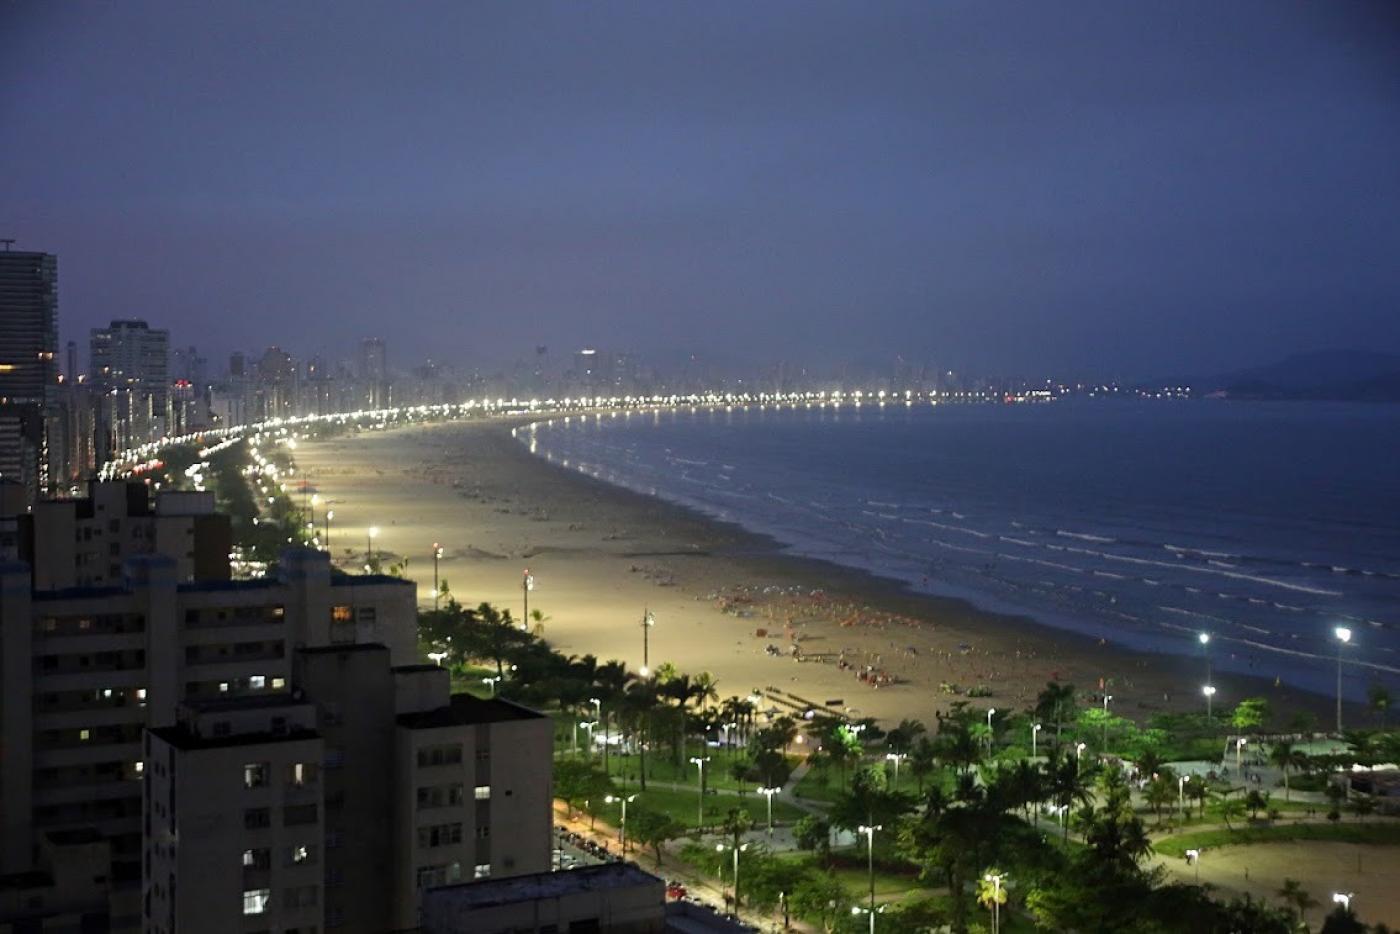 Foto áerea da praia de santos a noite #paratodosverem